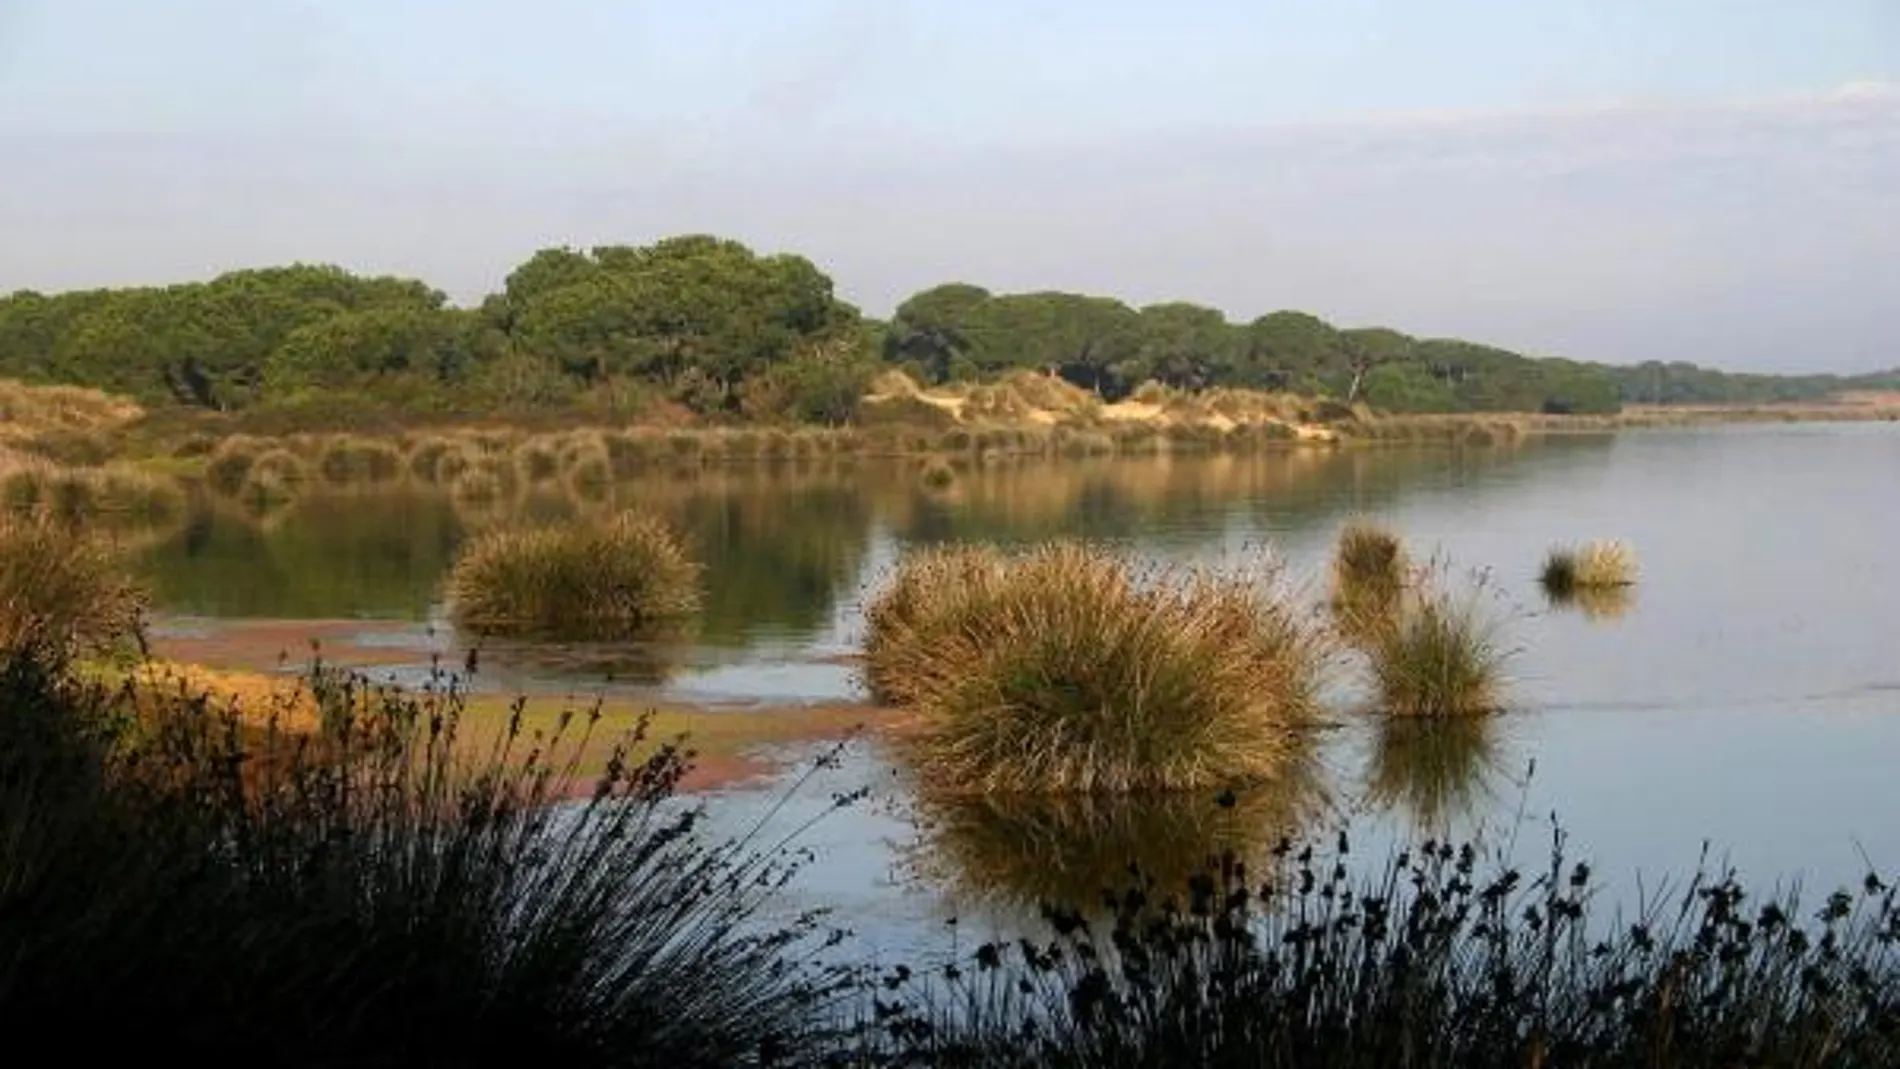 Fotografía facilitada por la organización conservacionista SEO-BirdLife de los humedales del espacio natural de Doñana